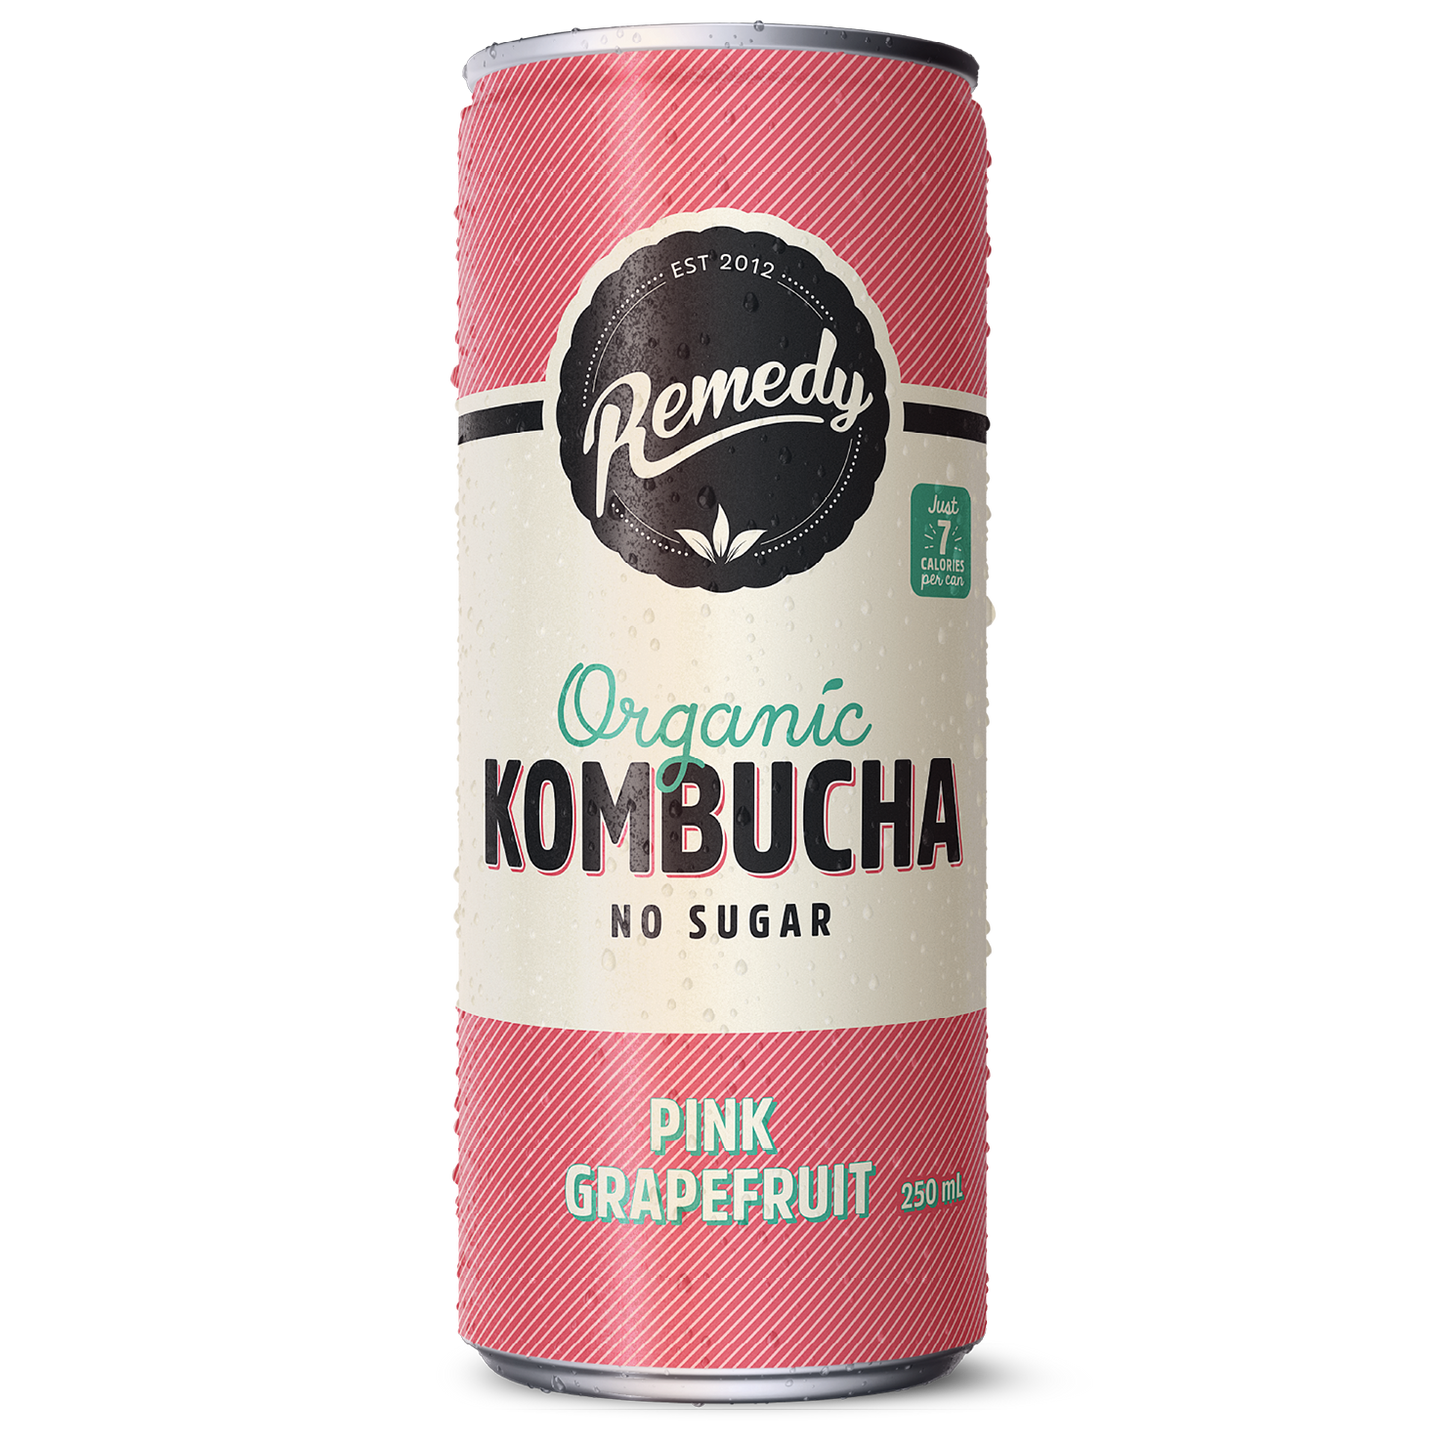 Remedy Kombucha Pink Grapefruit